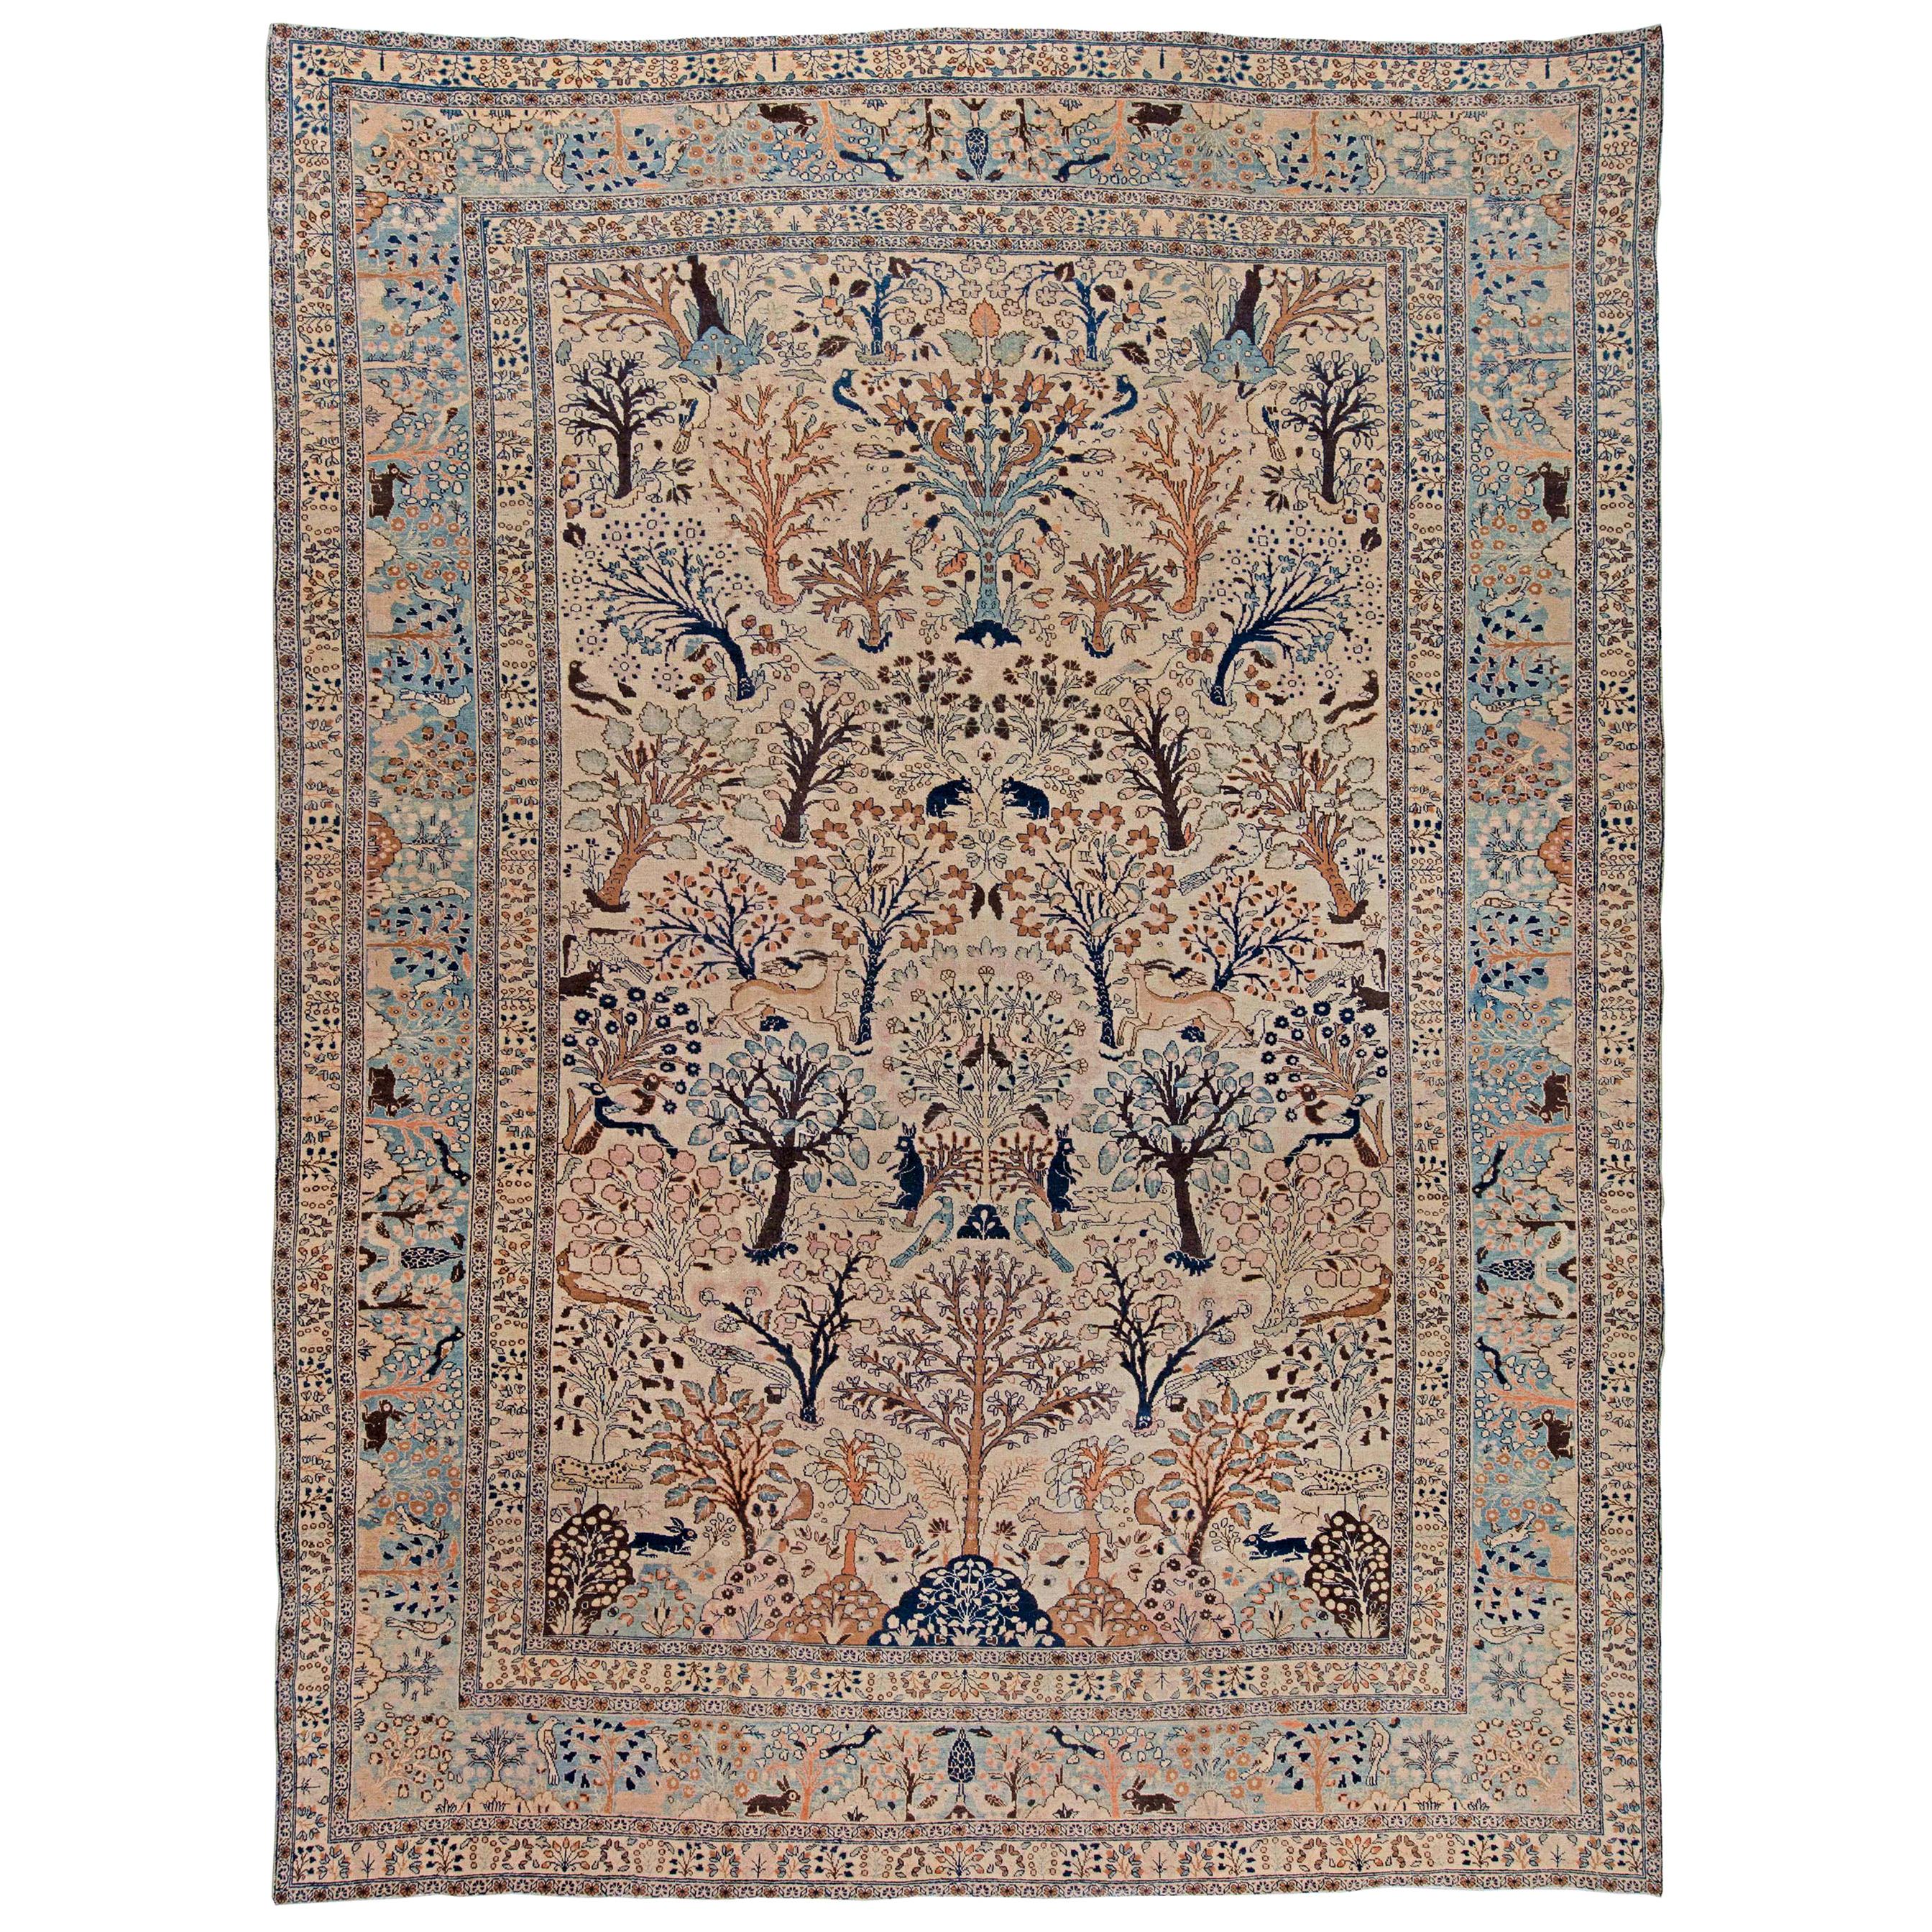 Antique Persian Tabriz Animal Design Carpet